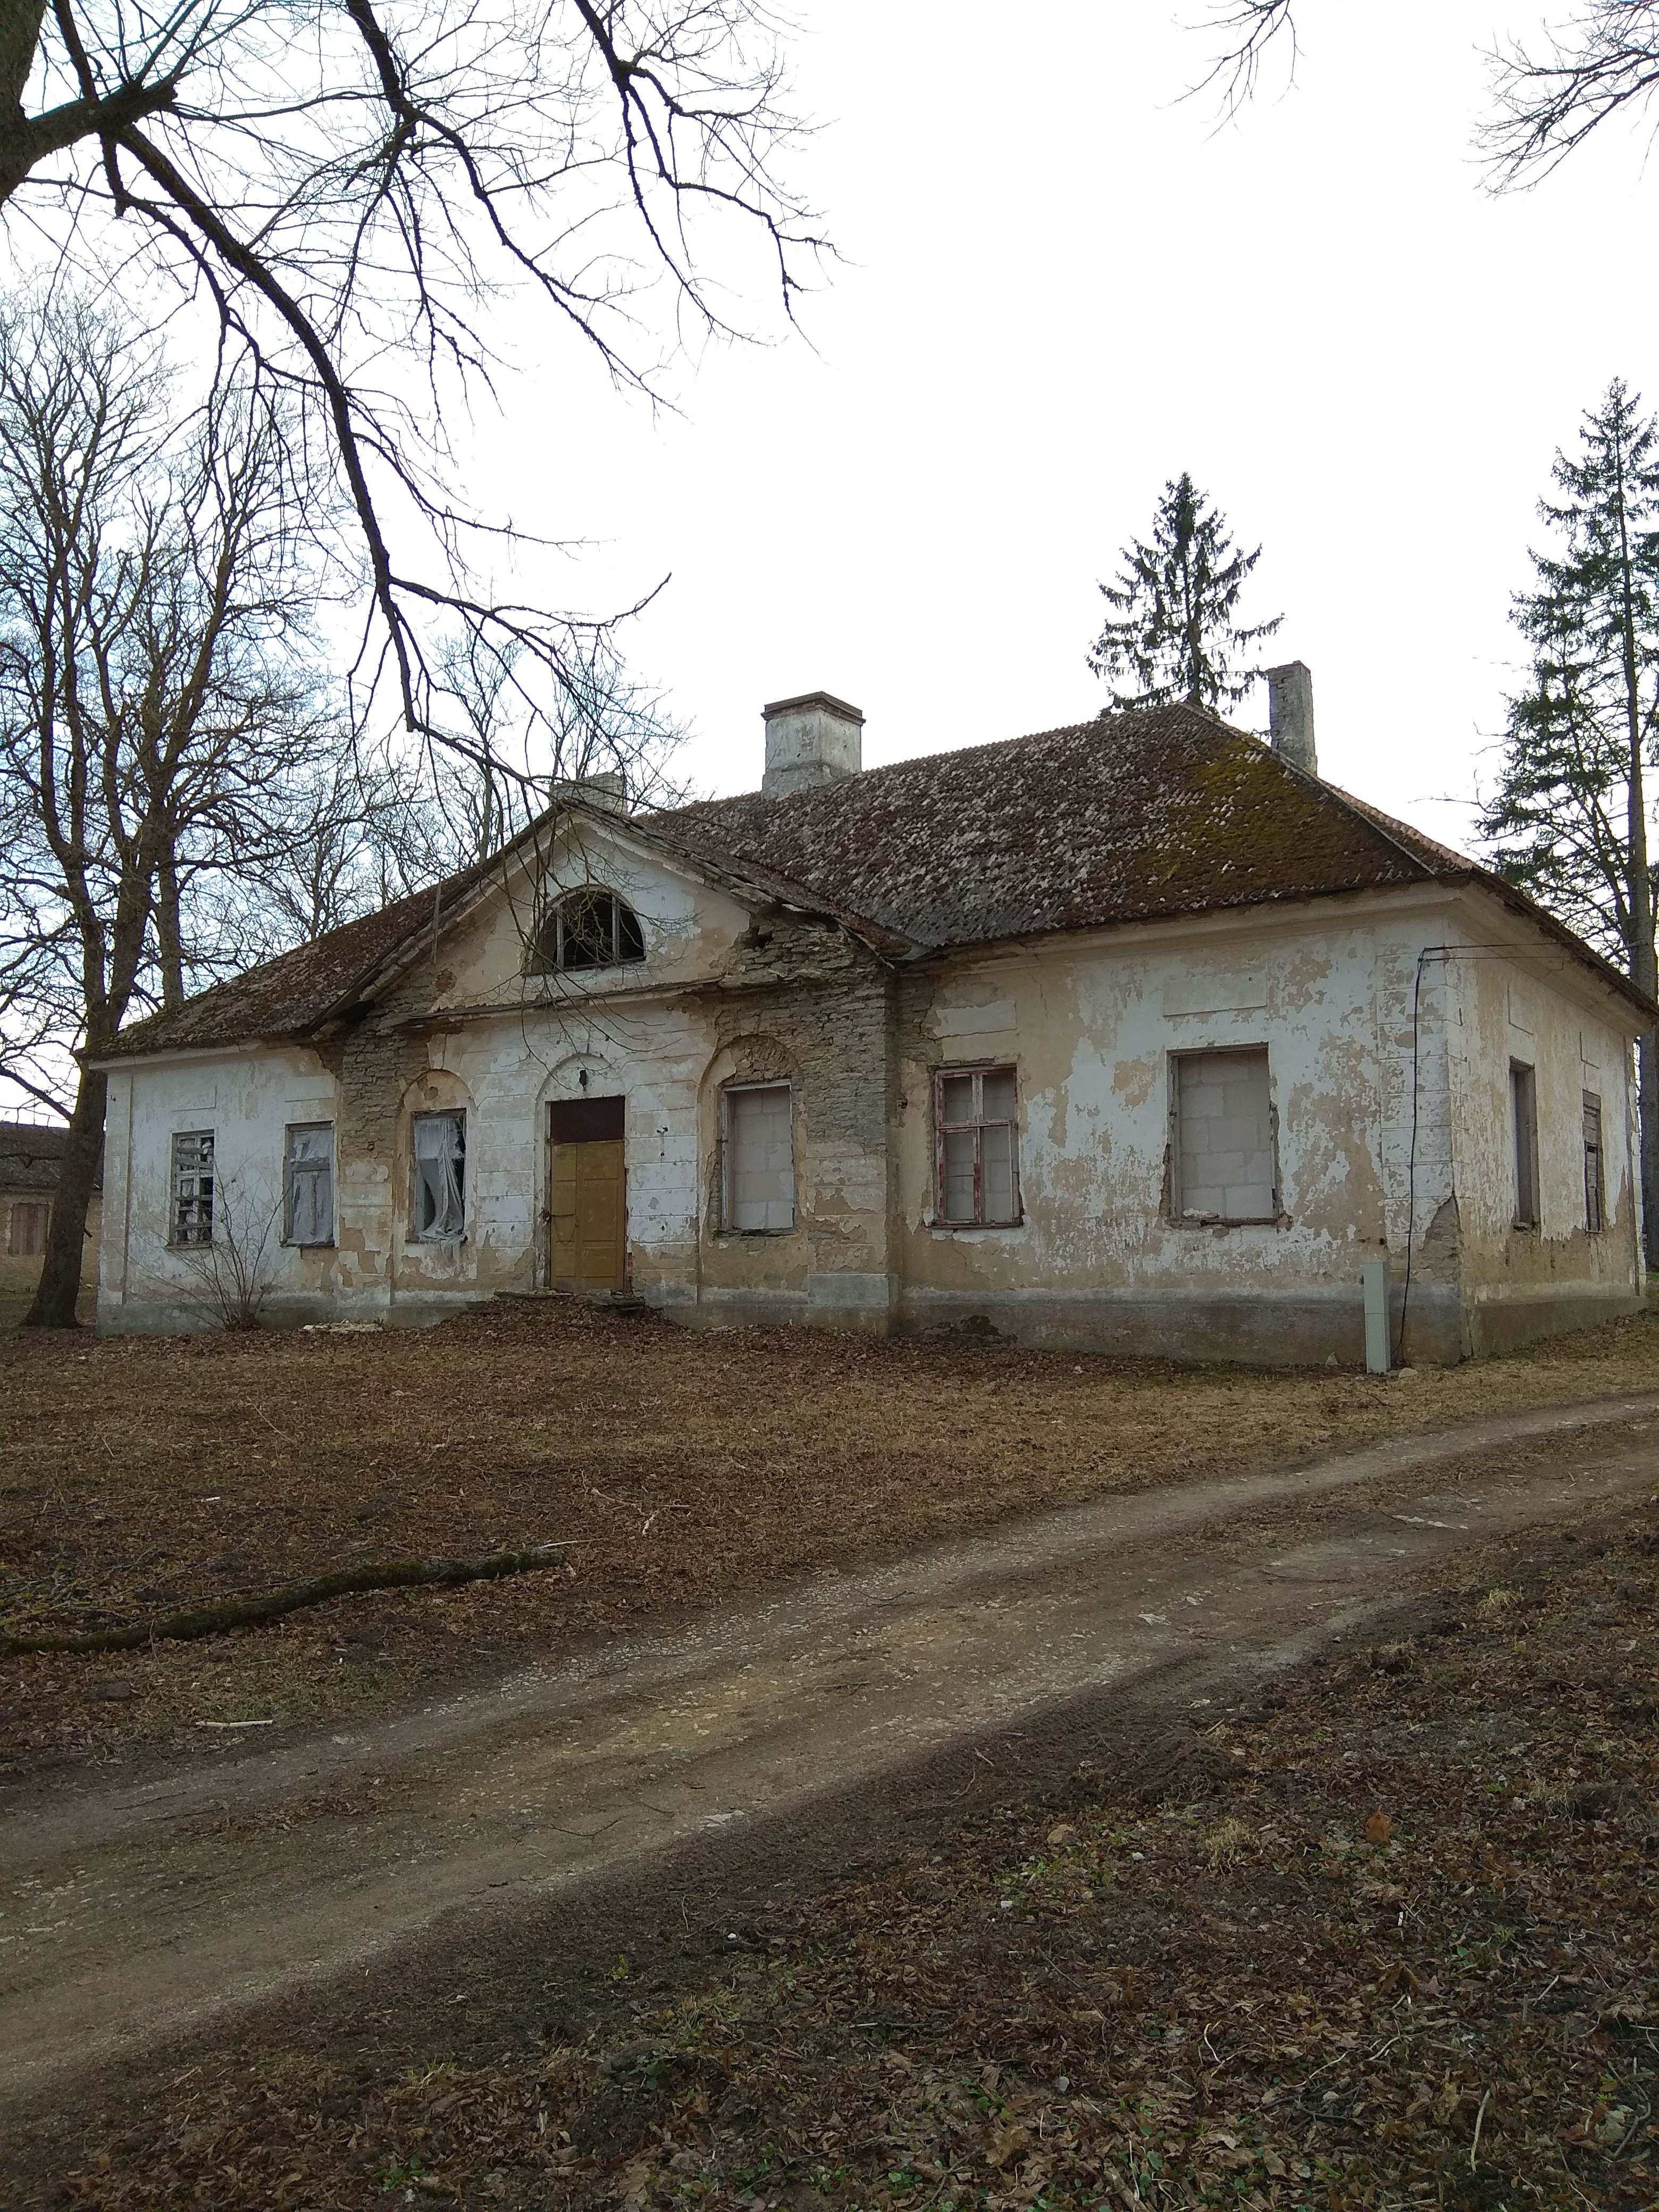 Põdruse post station Lääne-Viru county Haljala municipality Põdruse rephoto